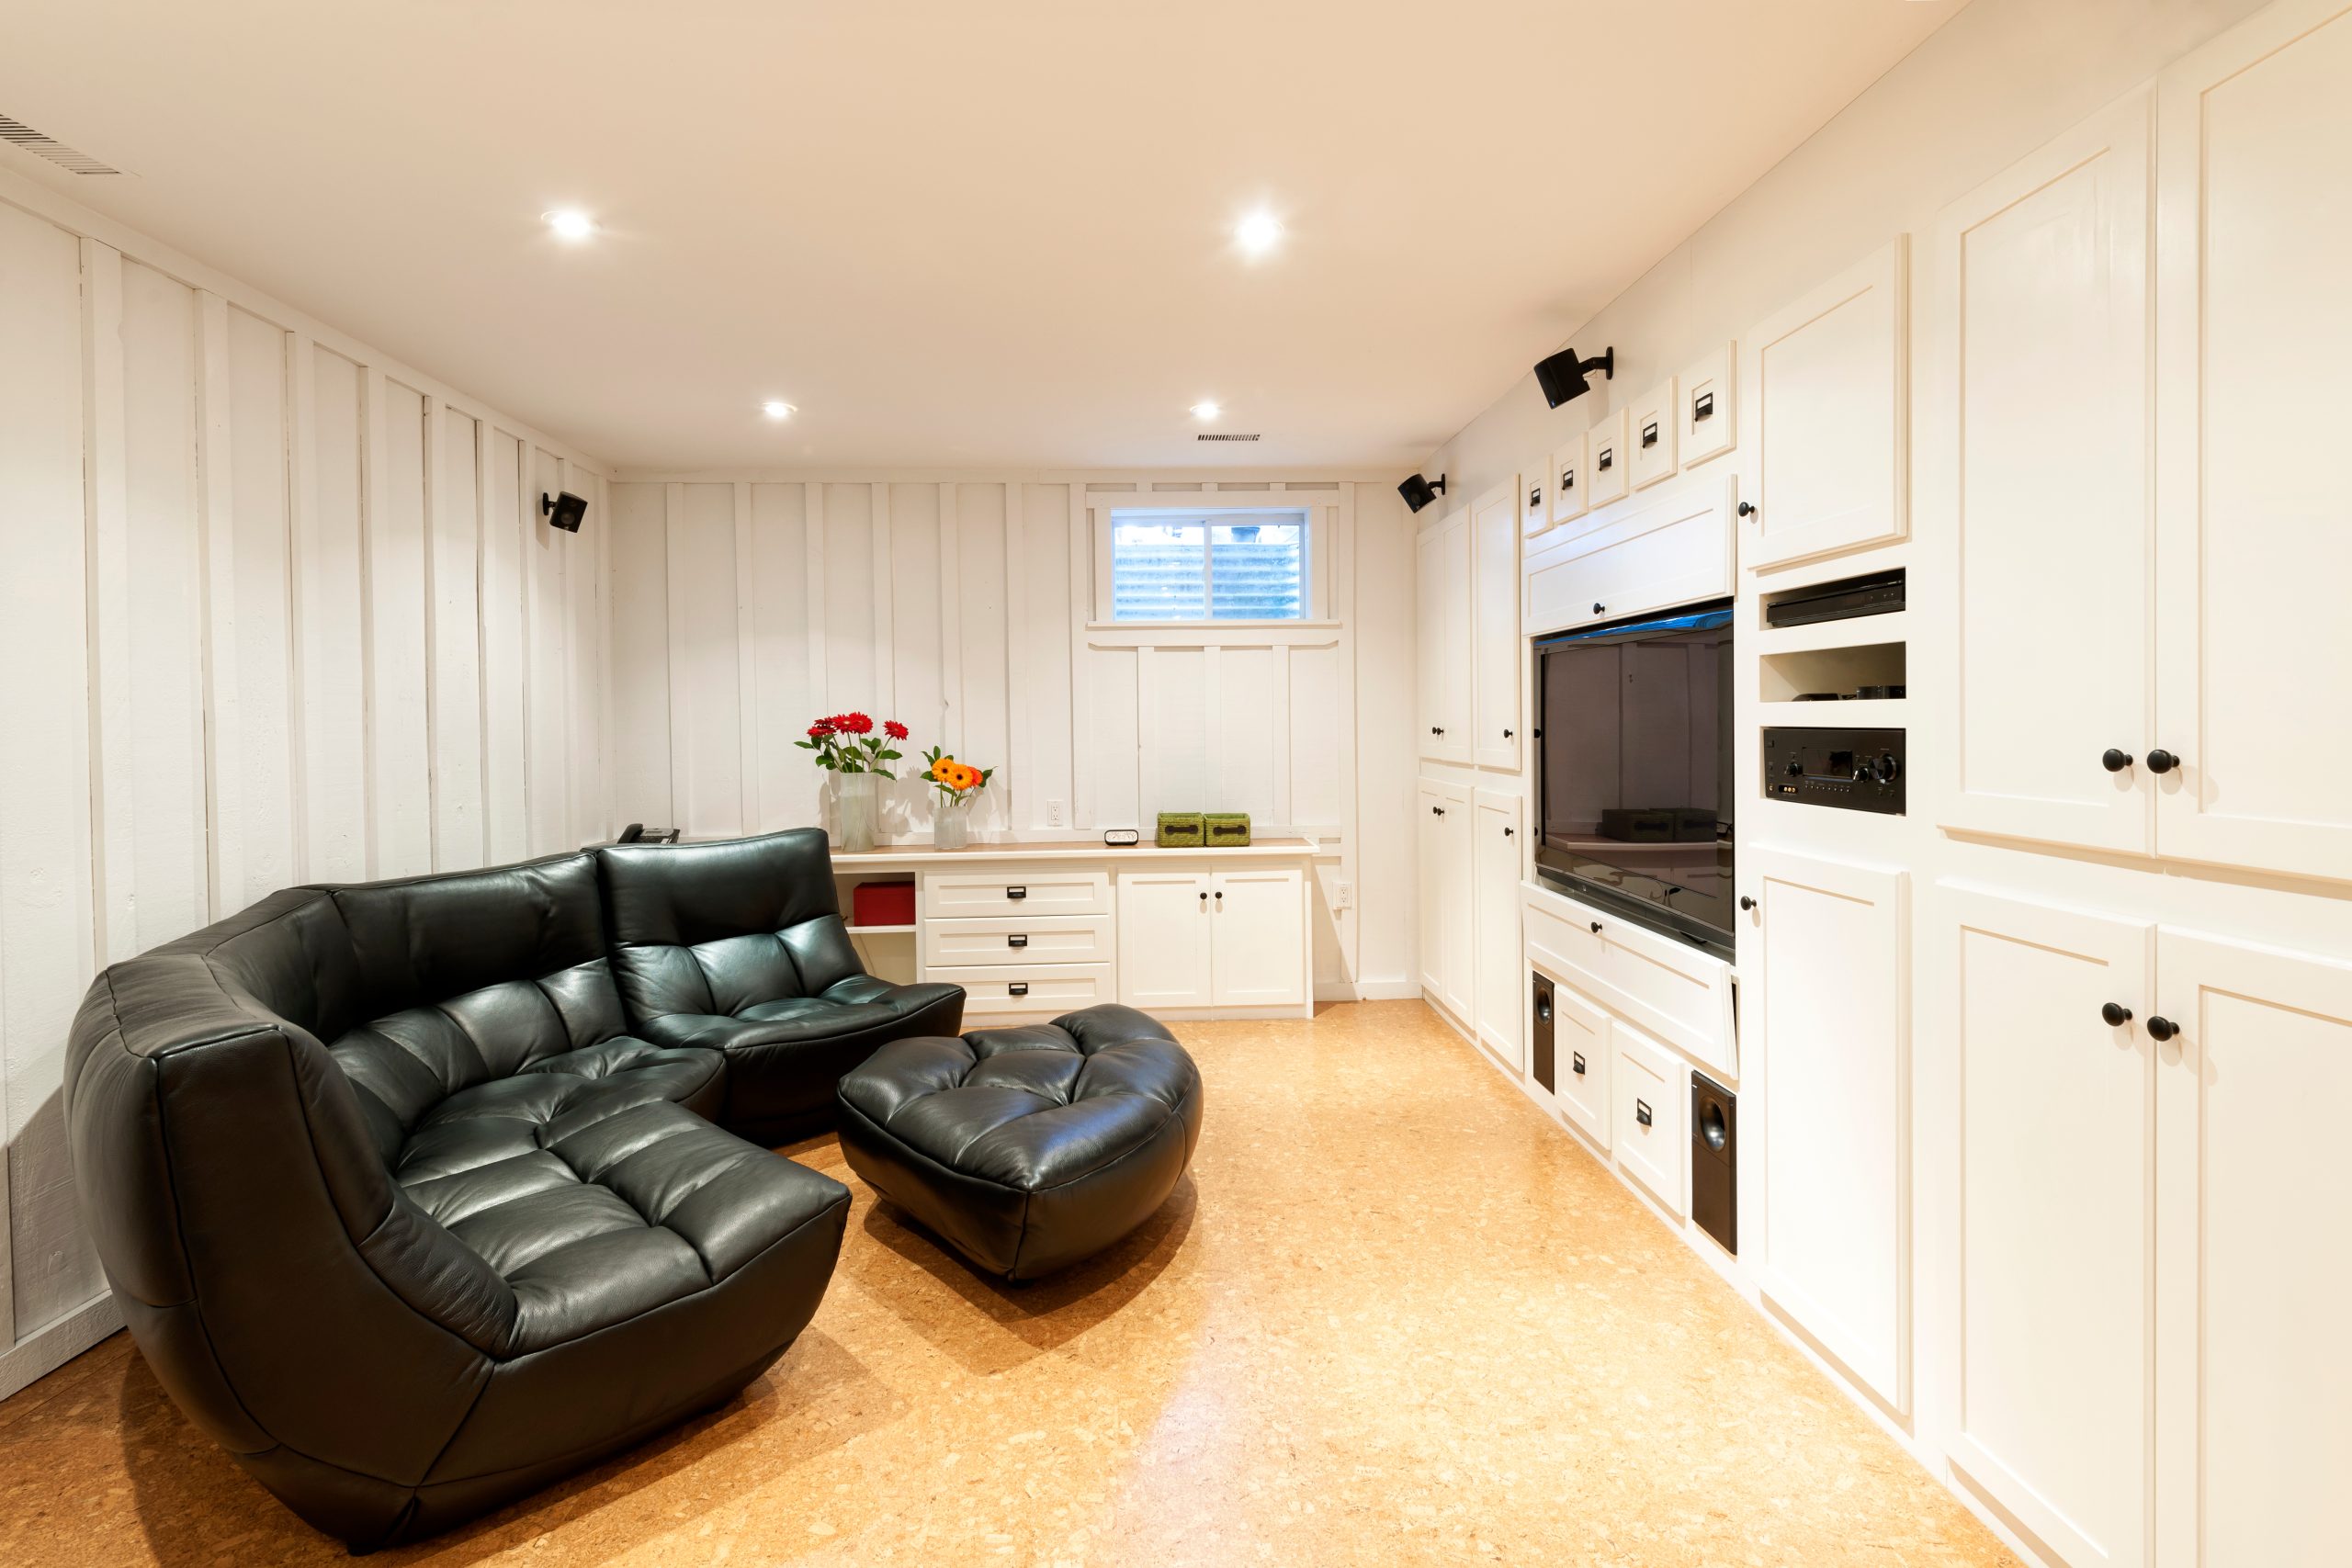 Basement living room with cork floor